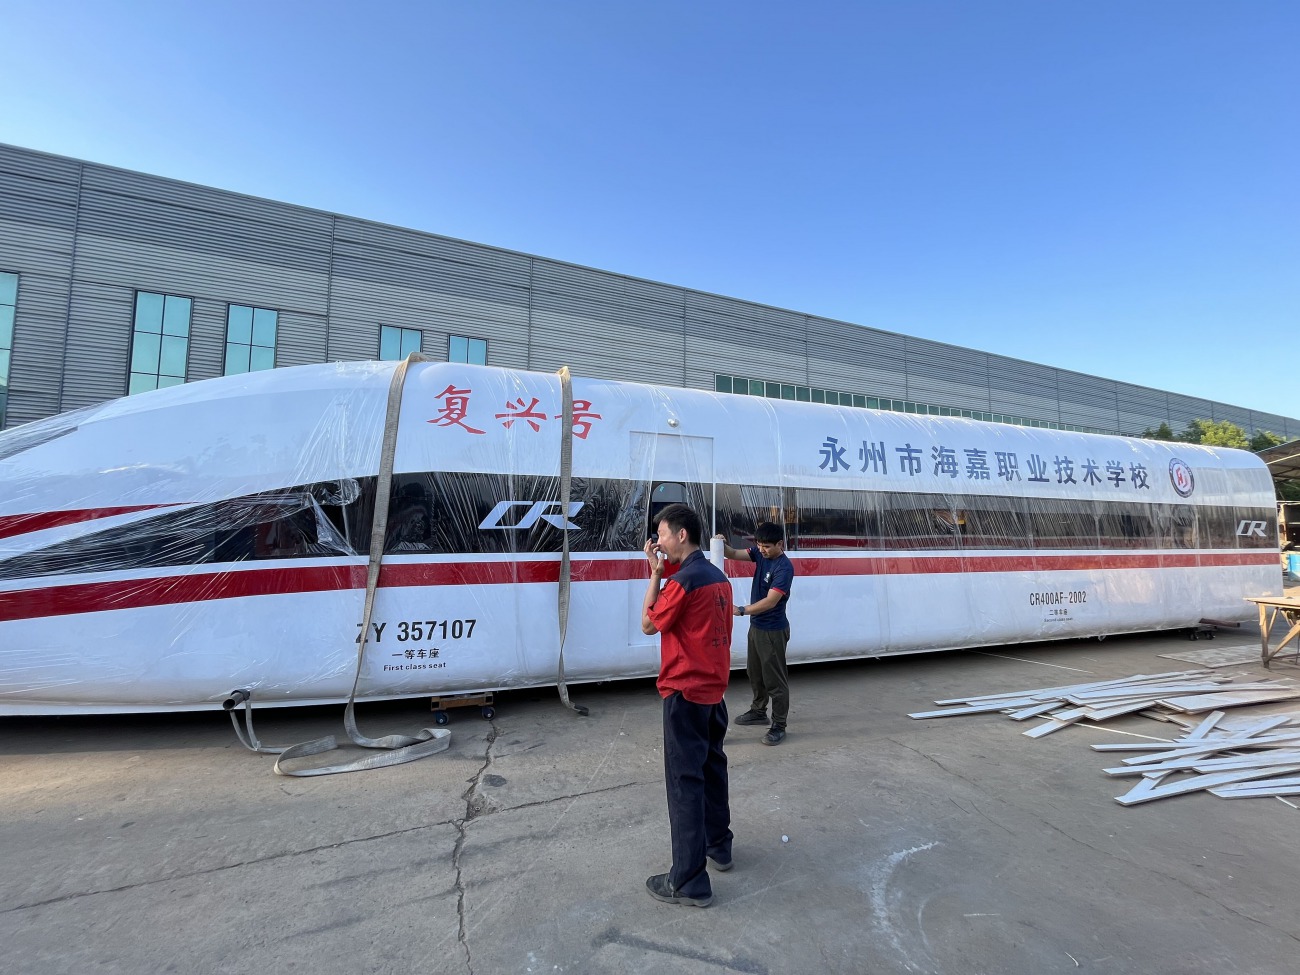 a320飞机模型厂家,1比1高铁模型厂家,重庆龙之梦模型